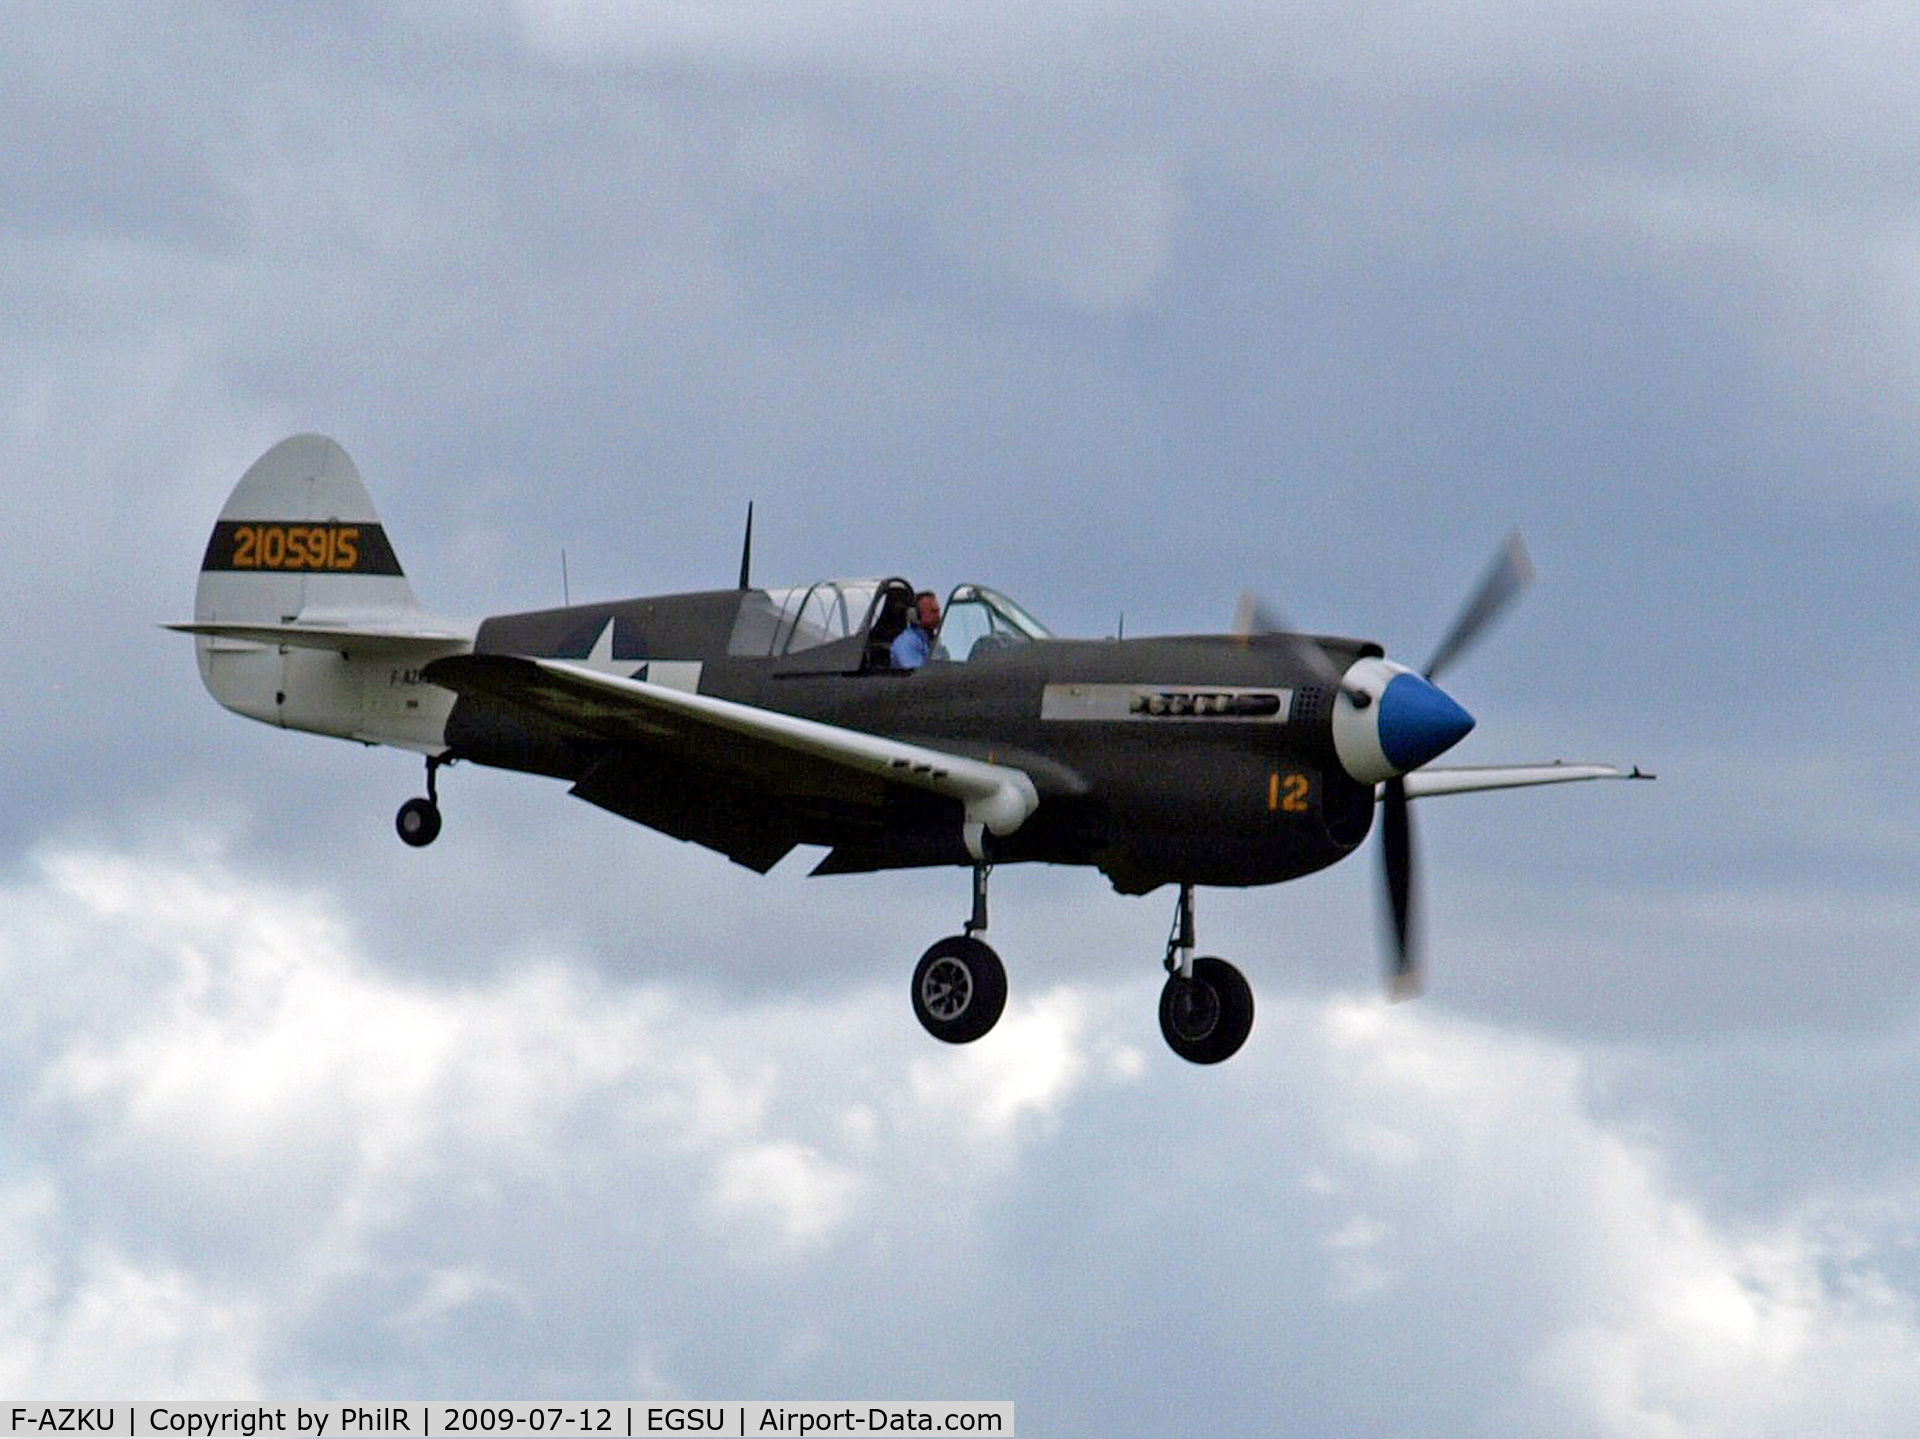 F-AZKU, 1942 Curtiss P-40N Warhawk C/N 29677, 2105915 1942 Curtis P-40N Warhawk Flying Legends Duxford